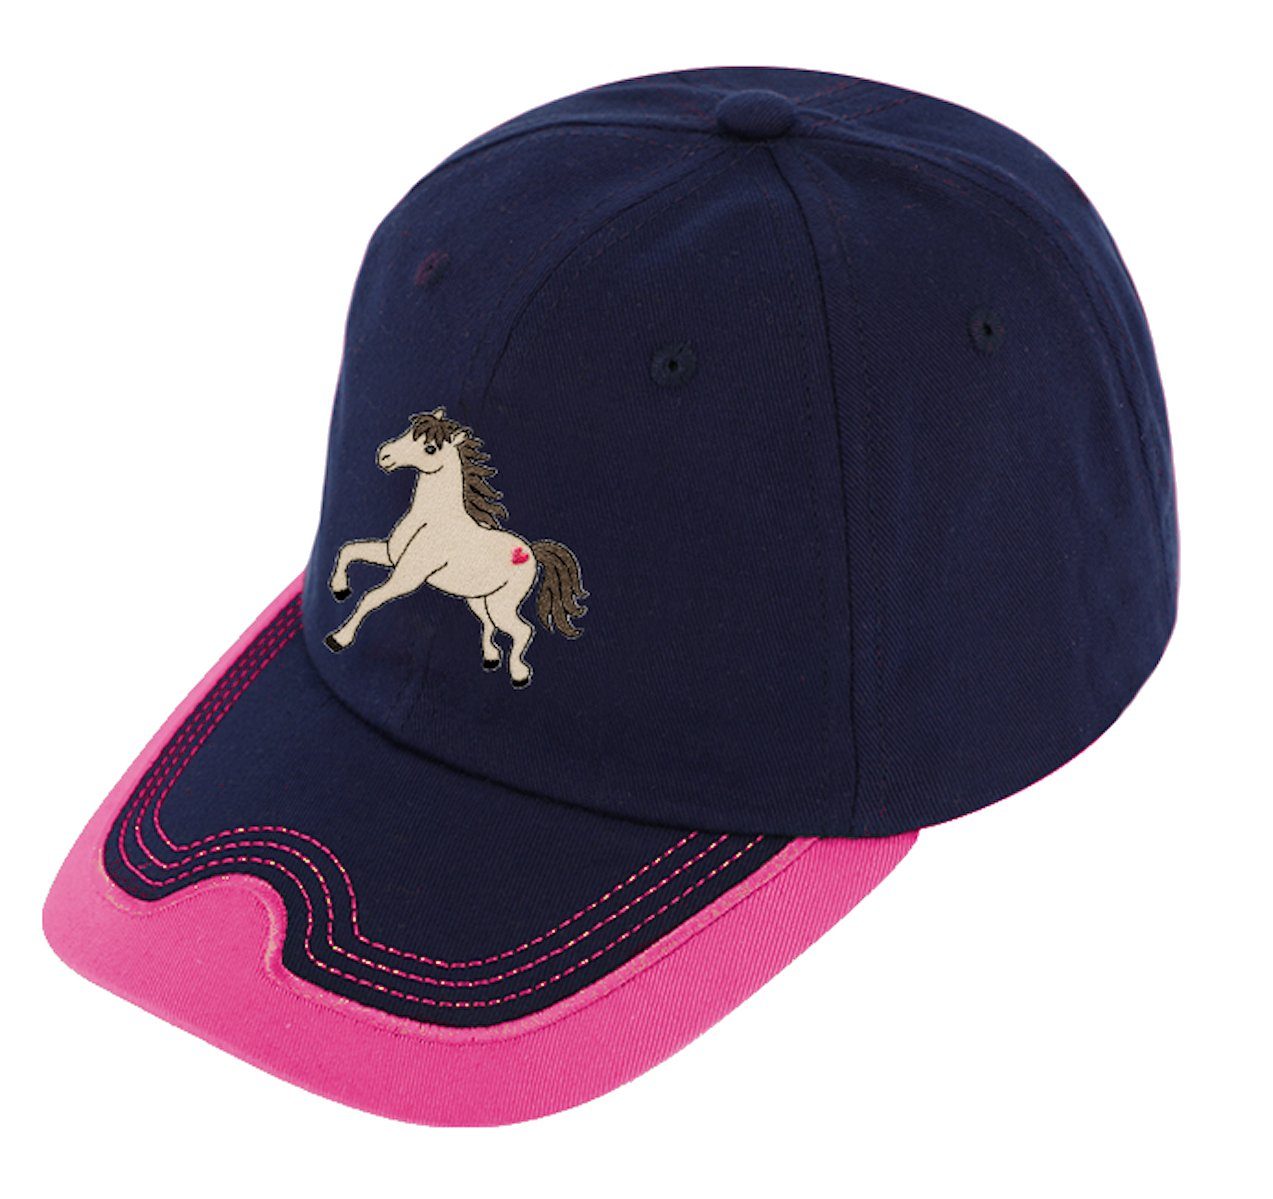 Basecap Fiebig pink Pferde Mütze Cap marine Baseballcap Pferd cap Fiebig Baseball Mädchen